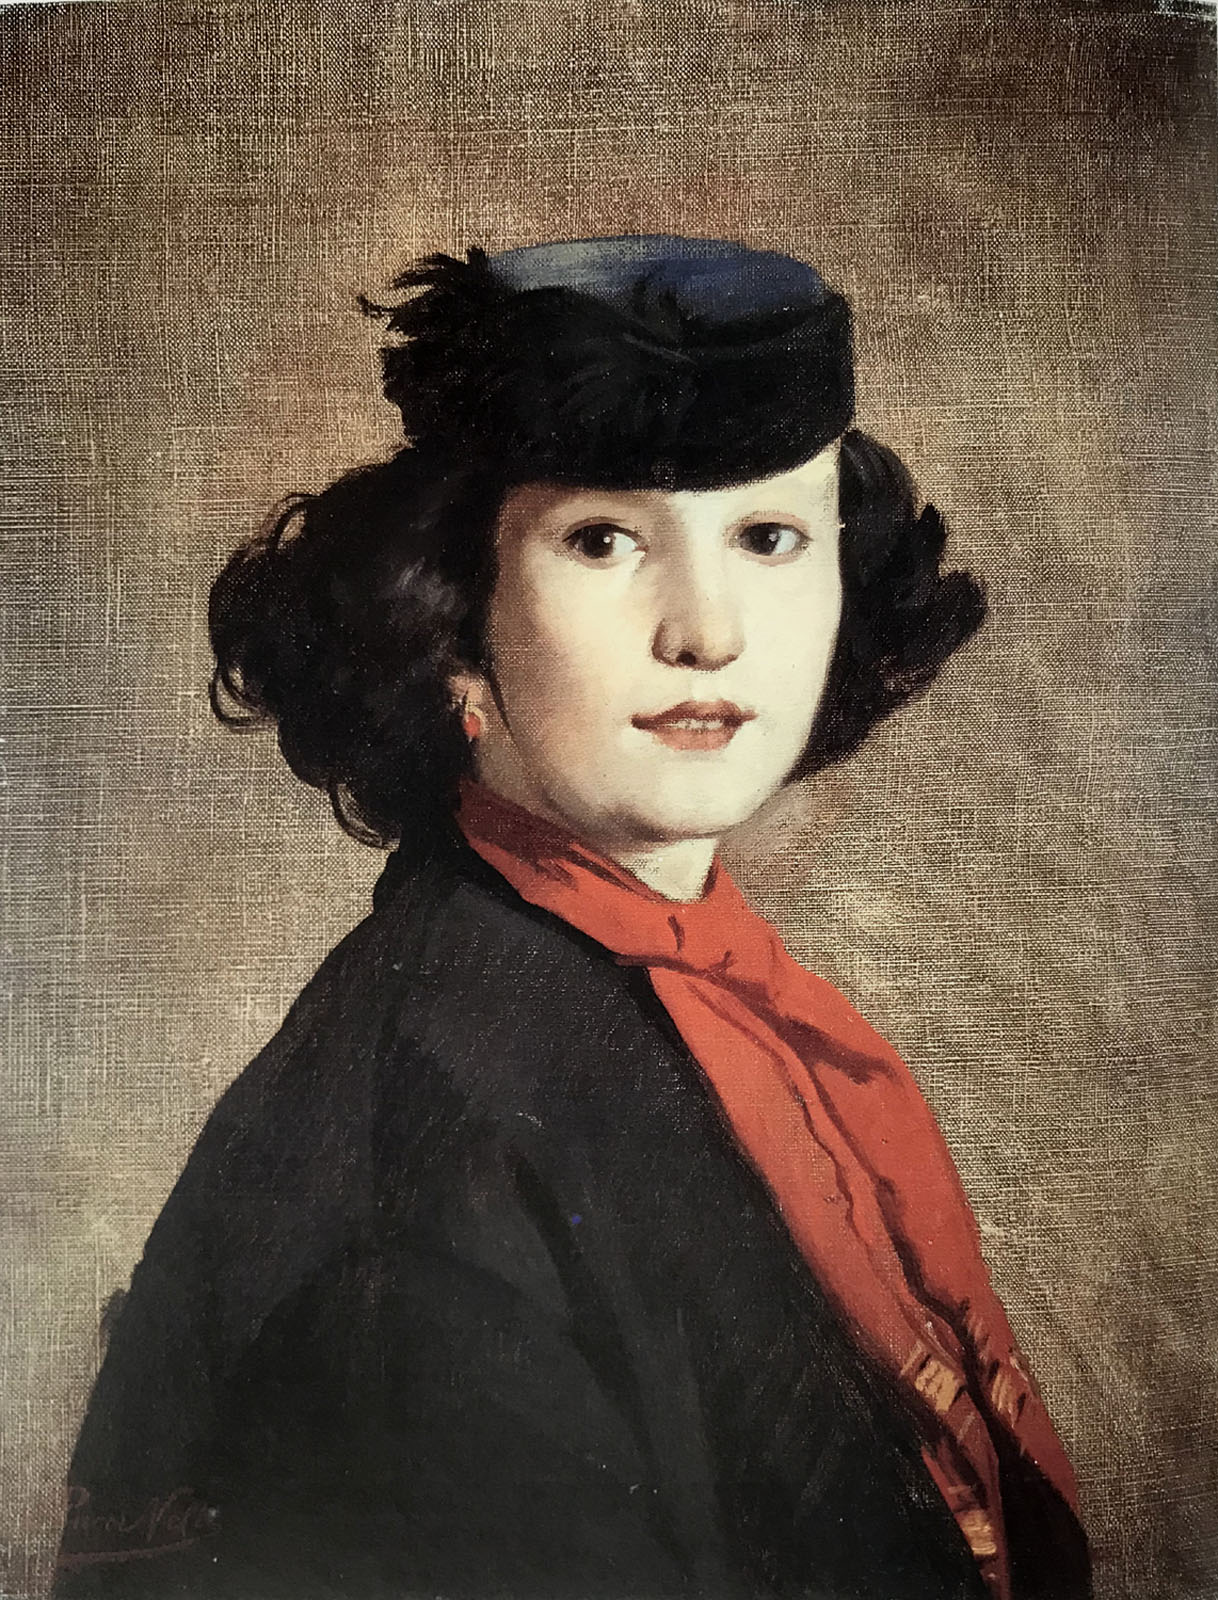 Ritratto di Nerina Badioli - 1866  Olio su tela, 56x42.5  - Galleria Nazionale d'Arte Moderna, Roma